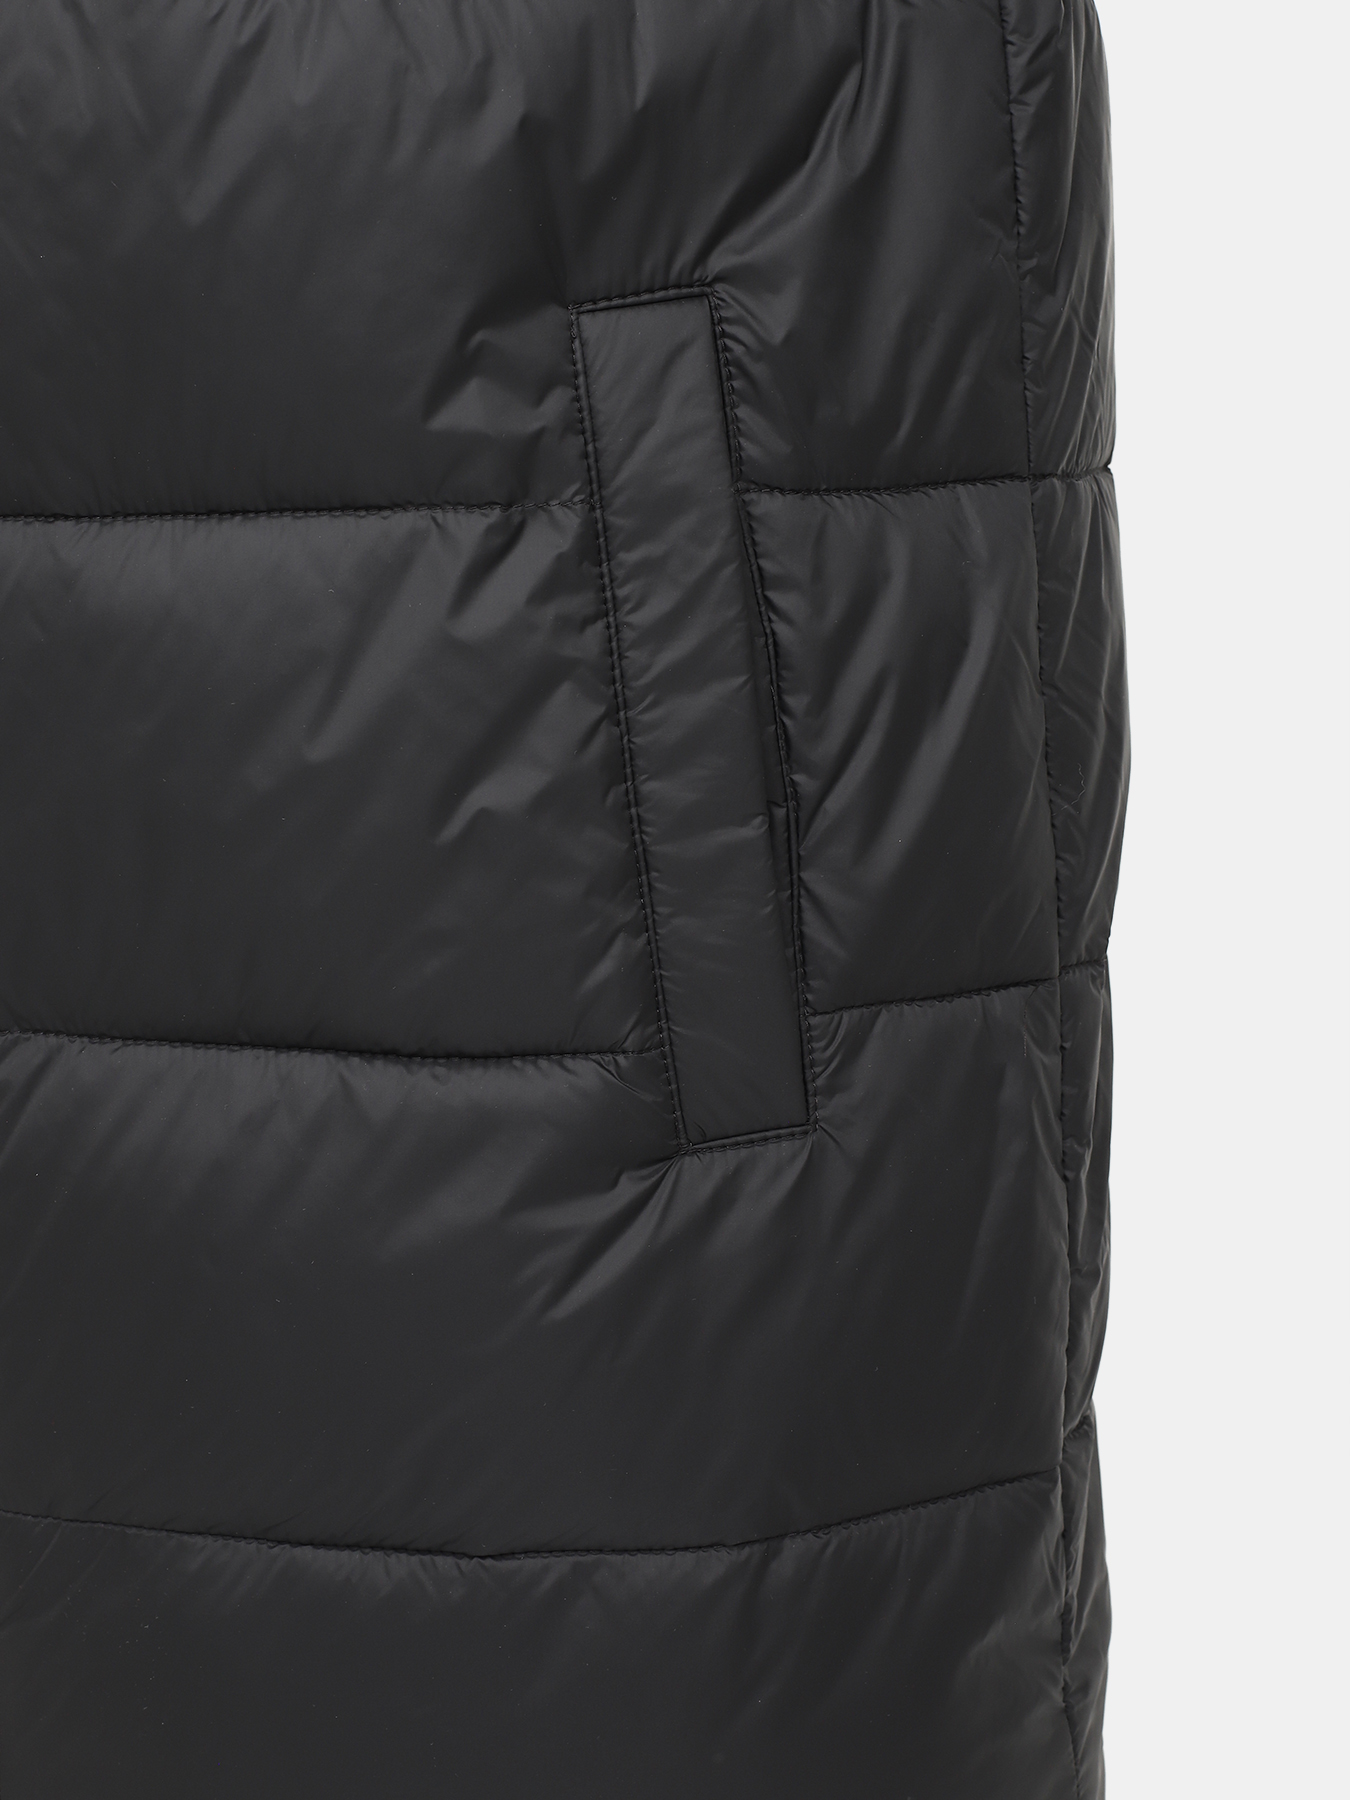 Удлиненная куртка Mati HUGO 426043-045, цвет черный, размер 52-54 - фото 2